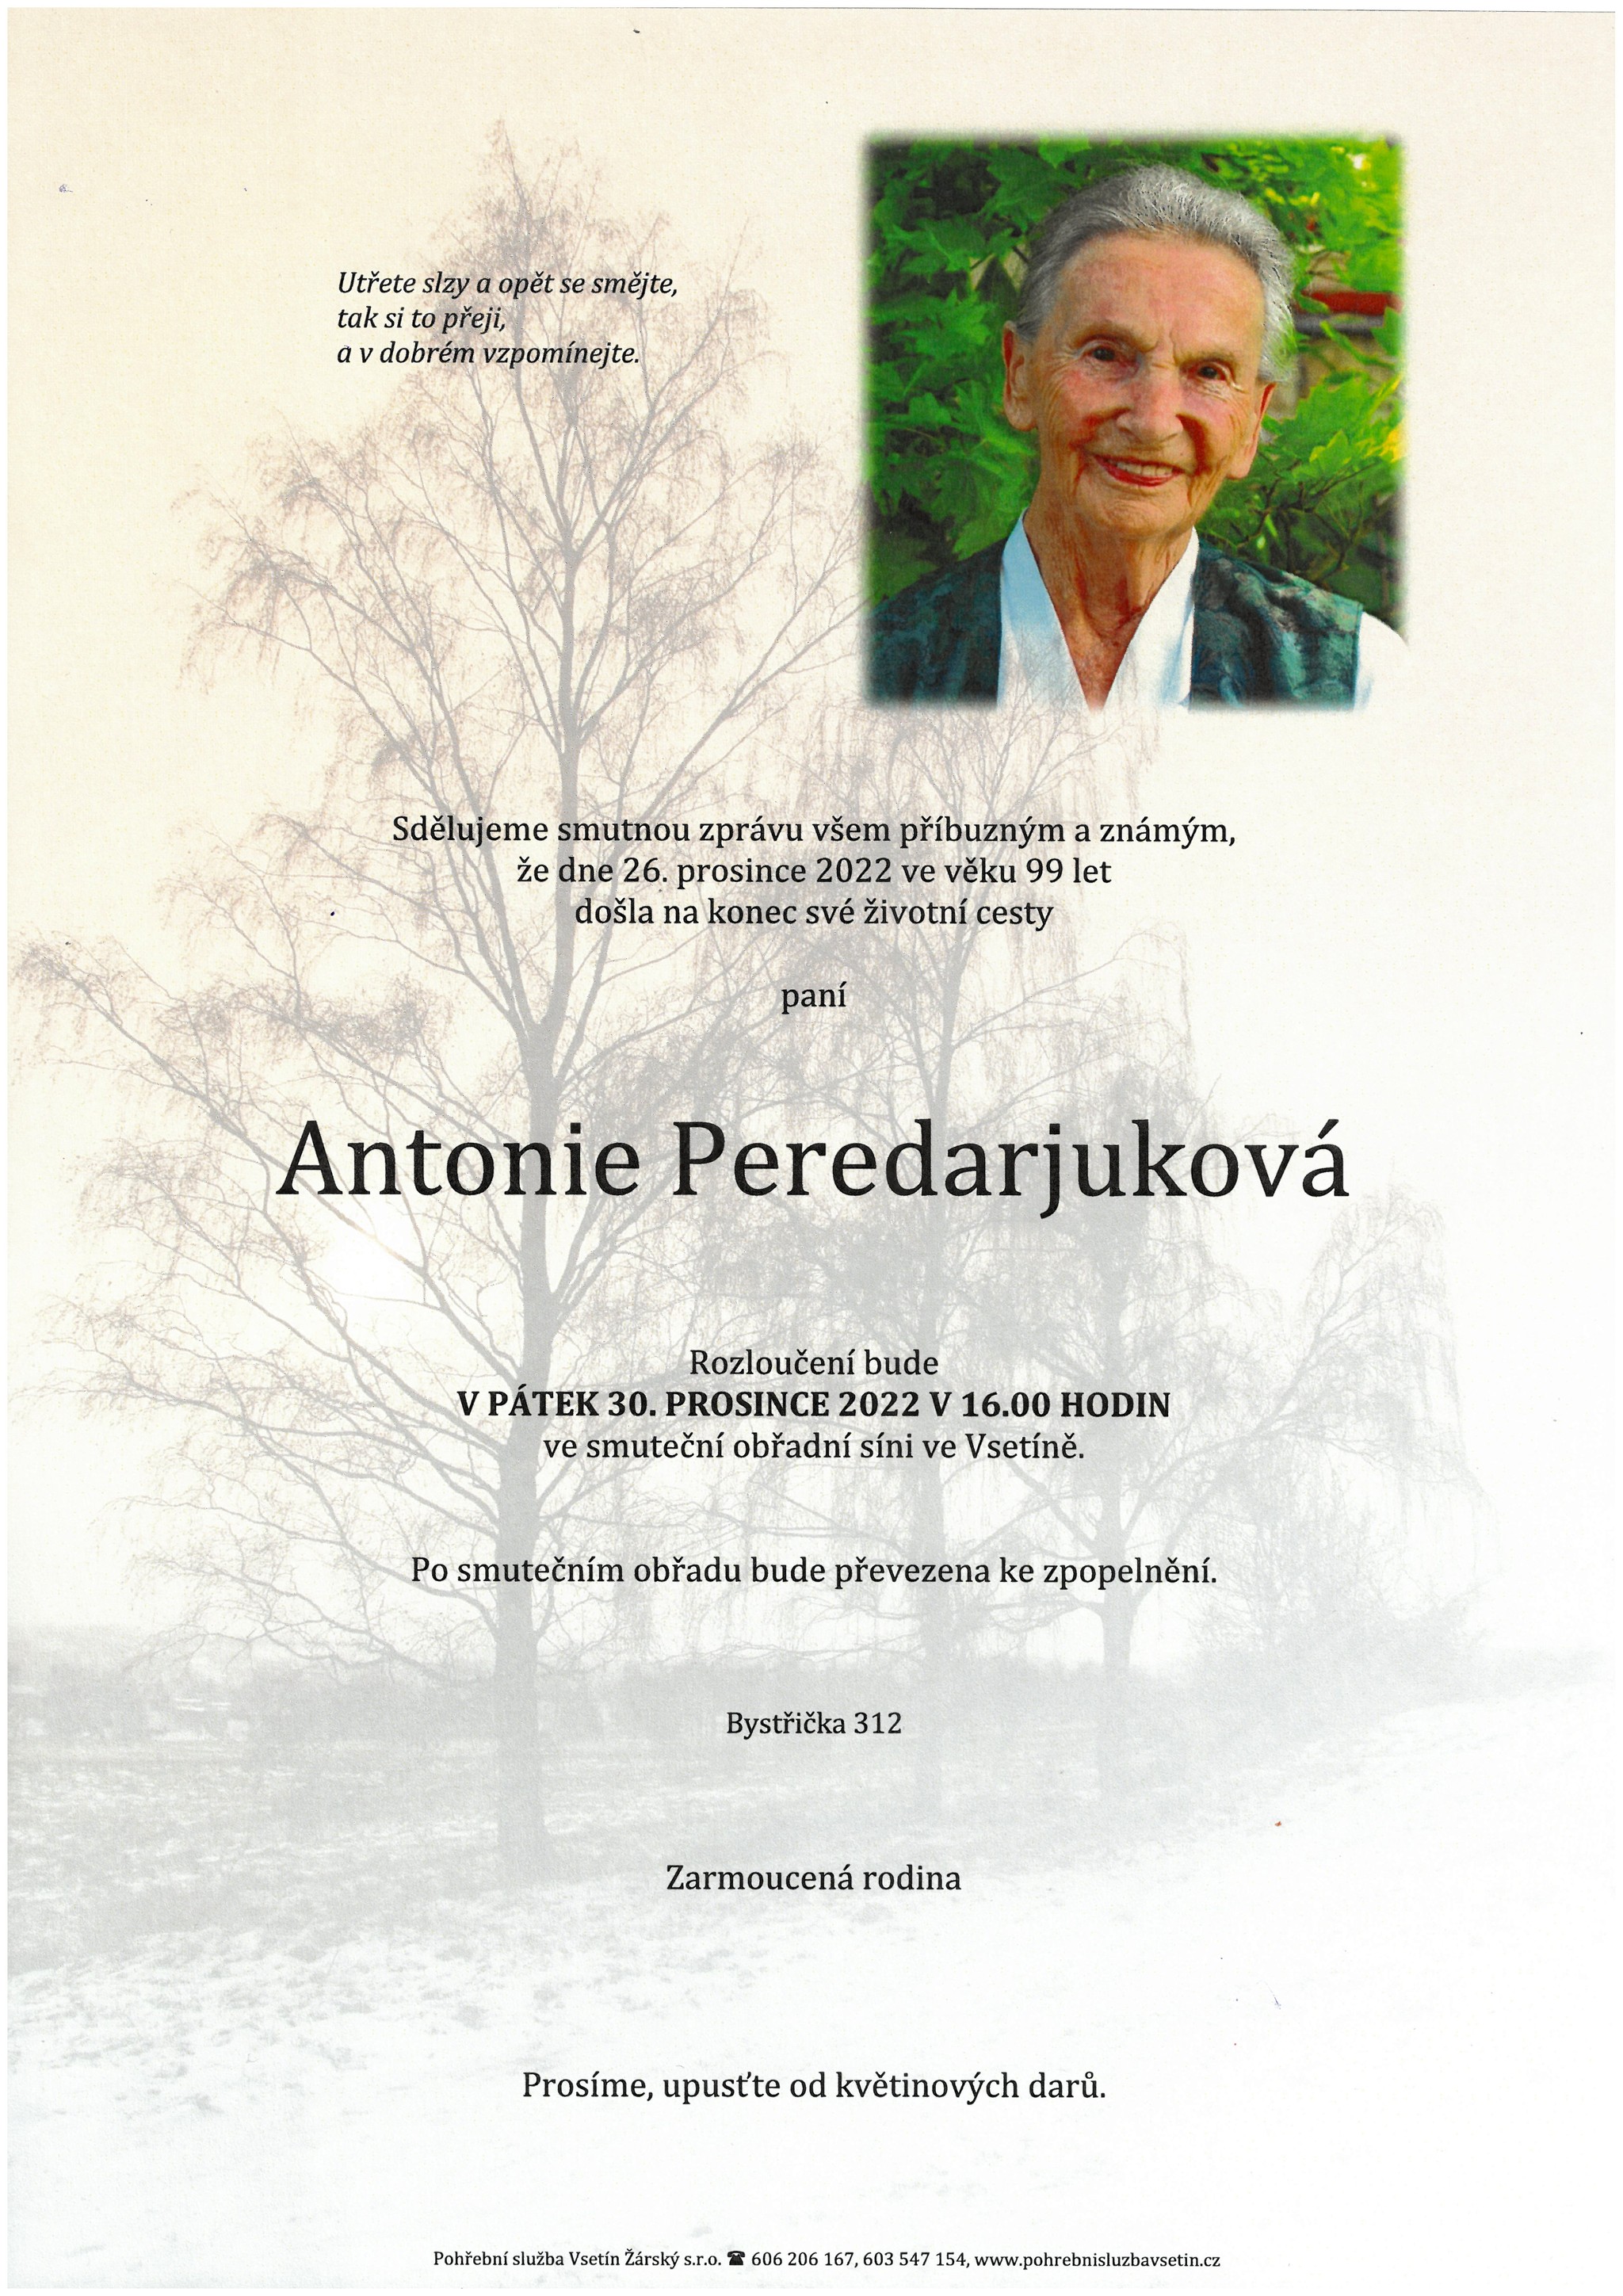 Antonie Peredarjuková